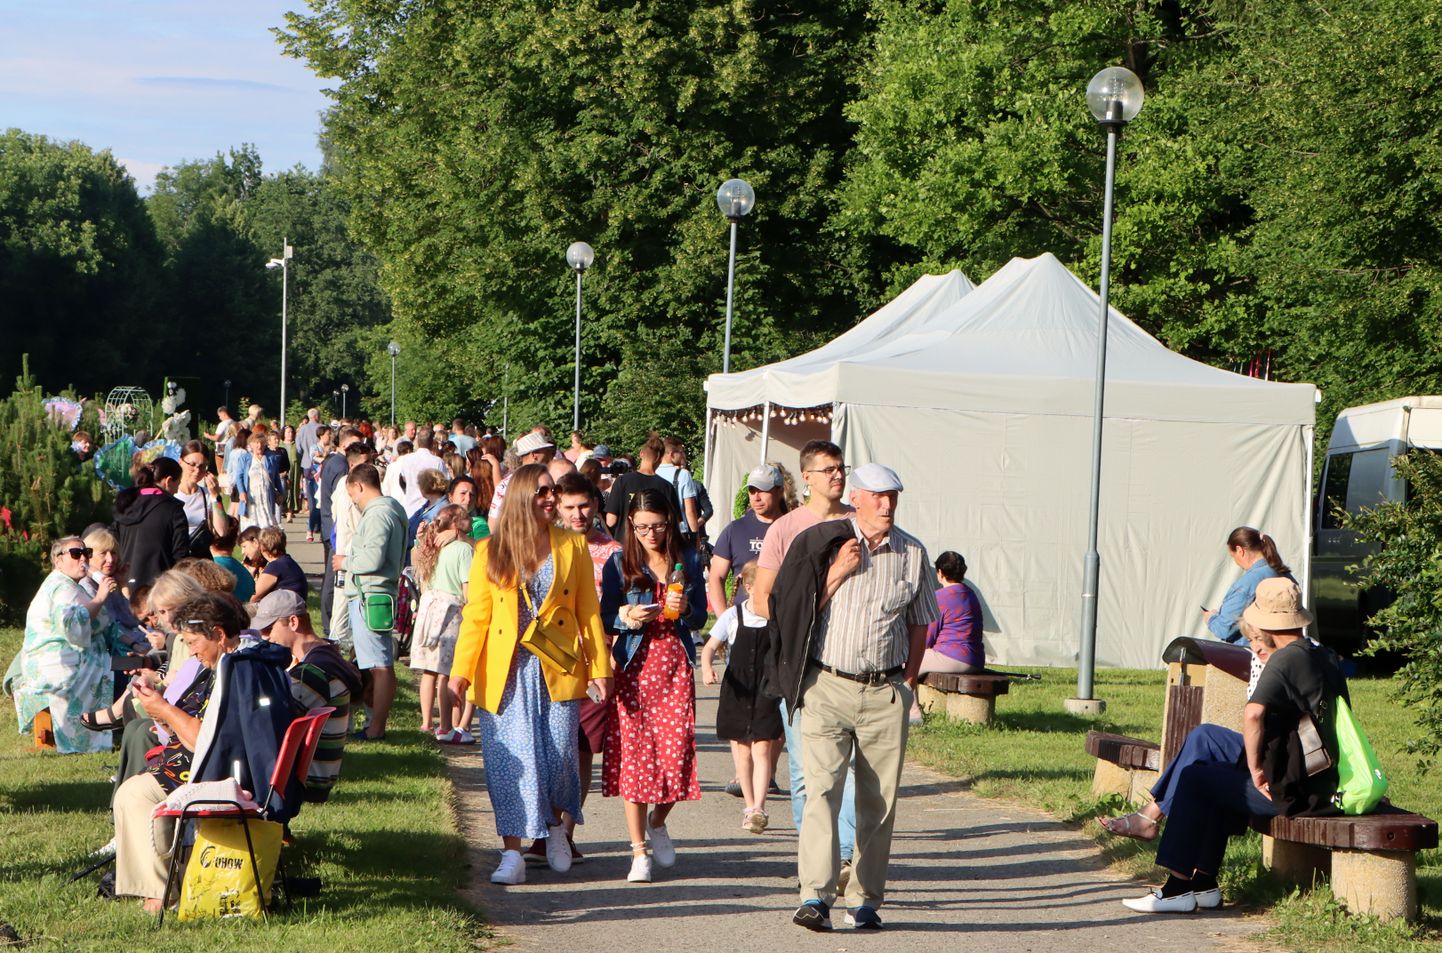 Фестиваль "Музыка на воде" в прошлом году был одним из самых массовых и значительных культурных событий в Кохтла-Ярве.